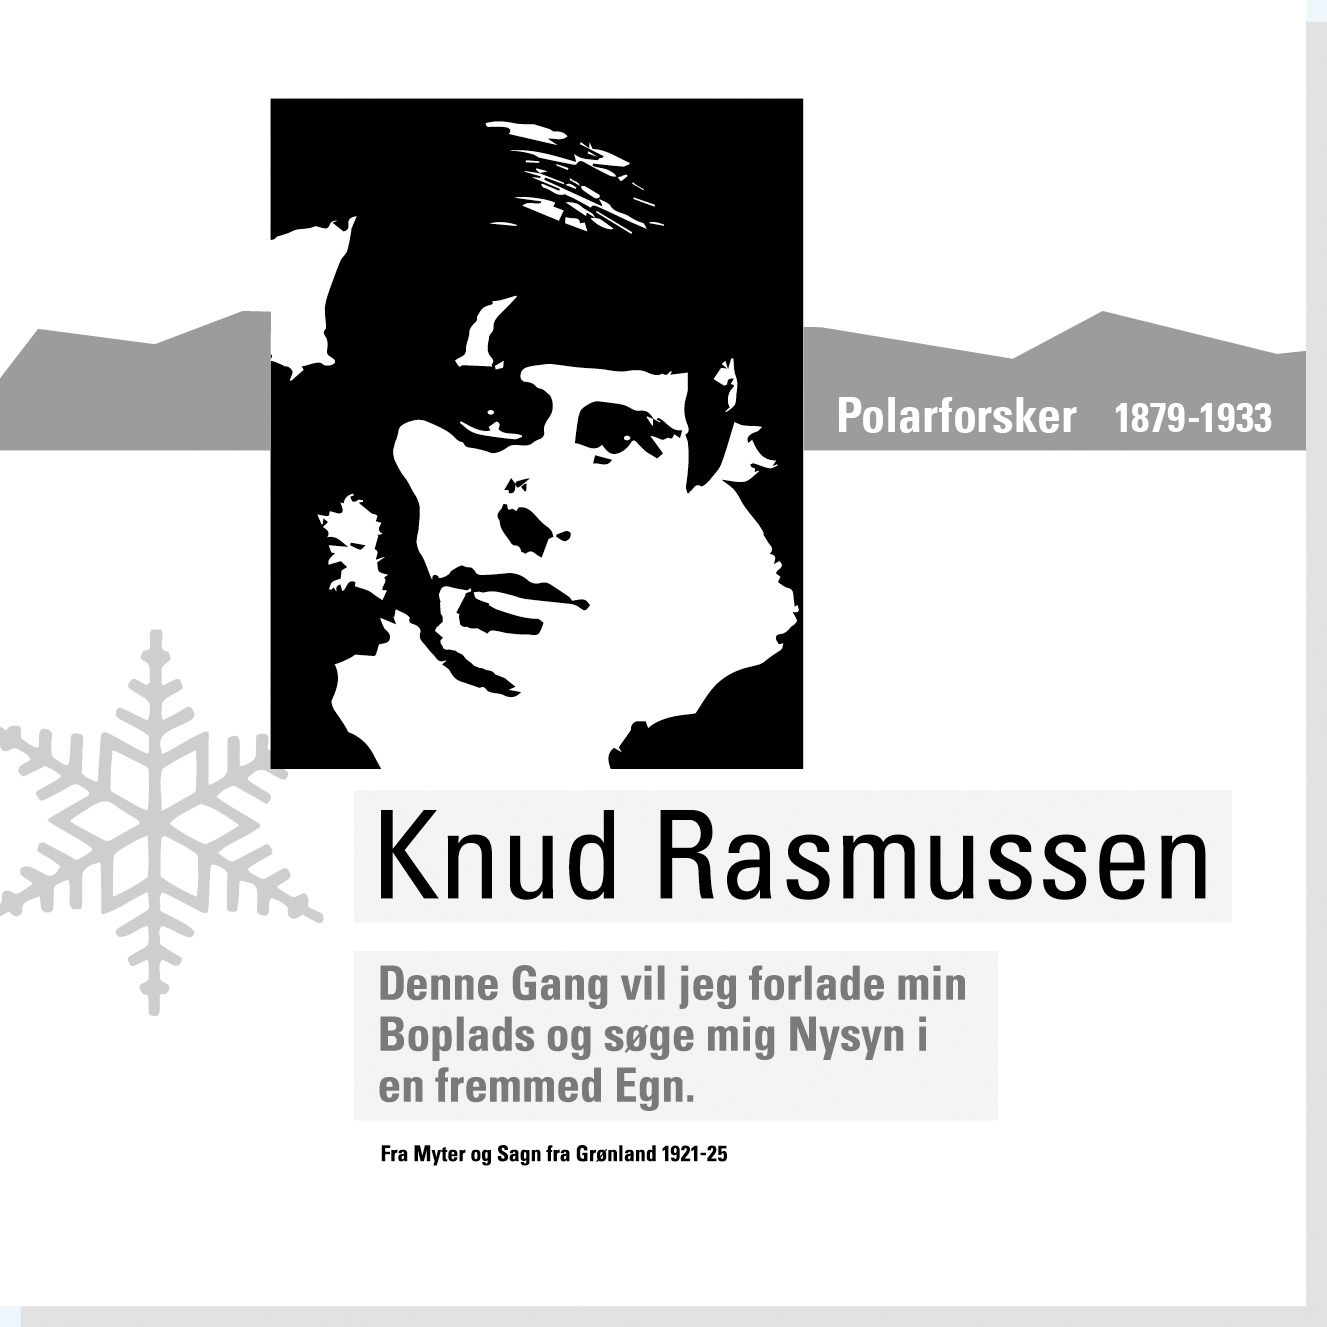 Knud Rasmussen er en af Rysensteens 22 udvalgte danske dannelsespersoner